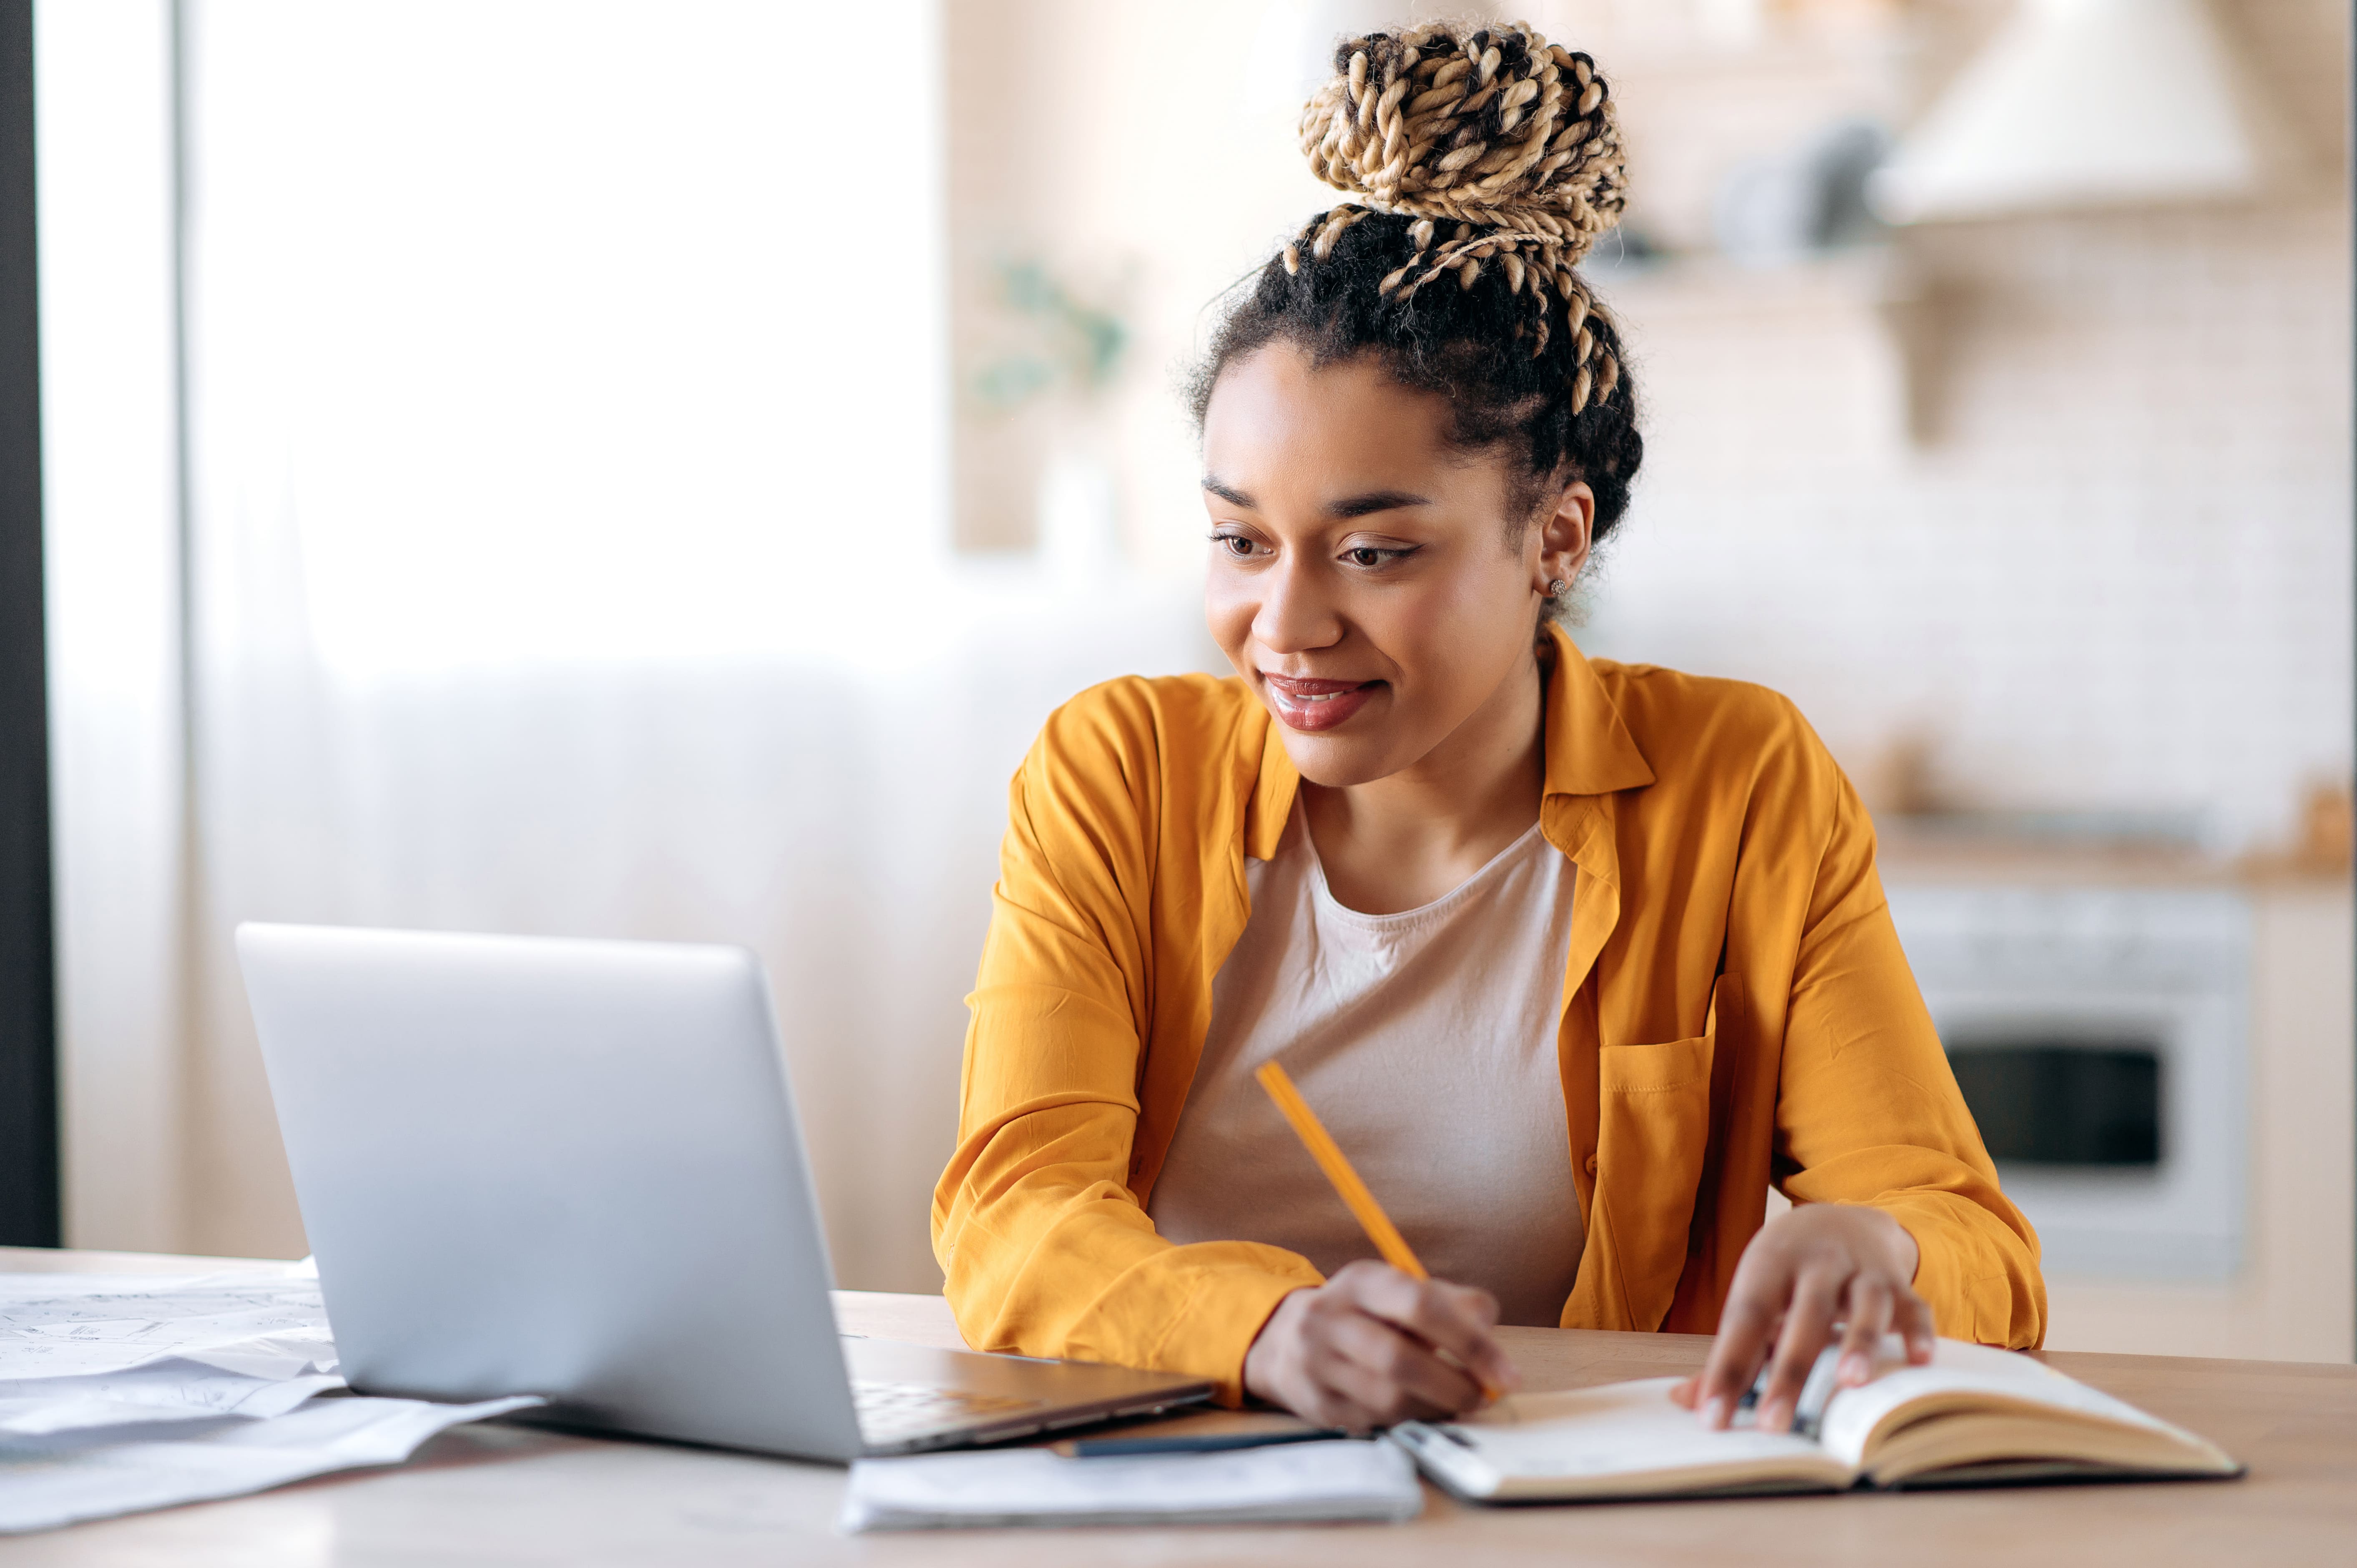 Mulher afroamericana com dreadlocks estudando remotamente no notebook em casa tomando notas enquanto está atenta e sorri